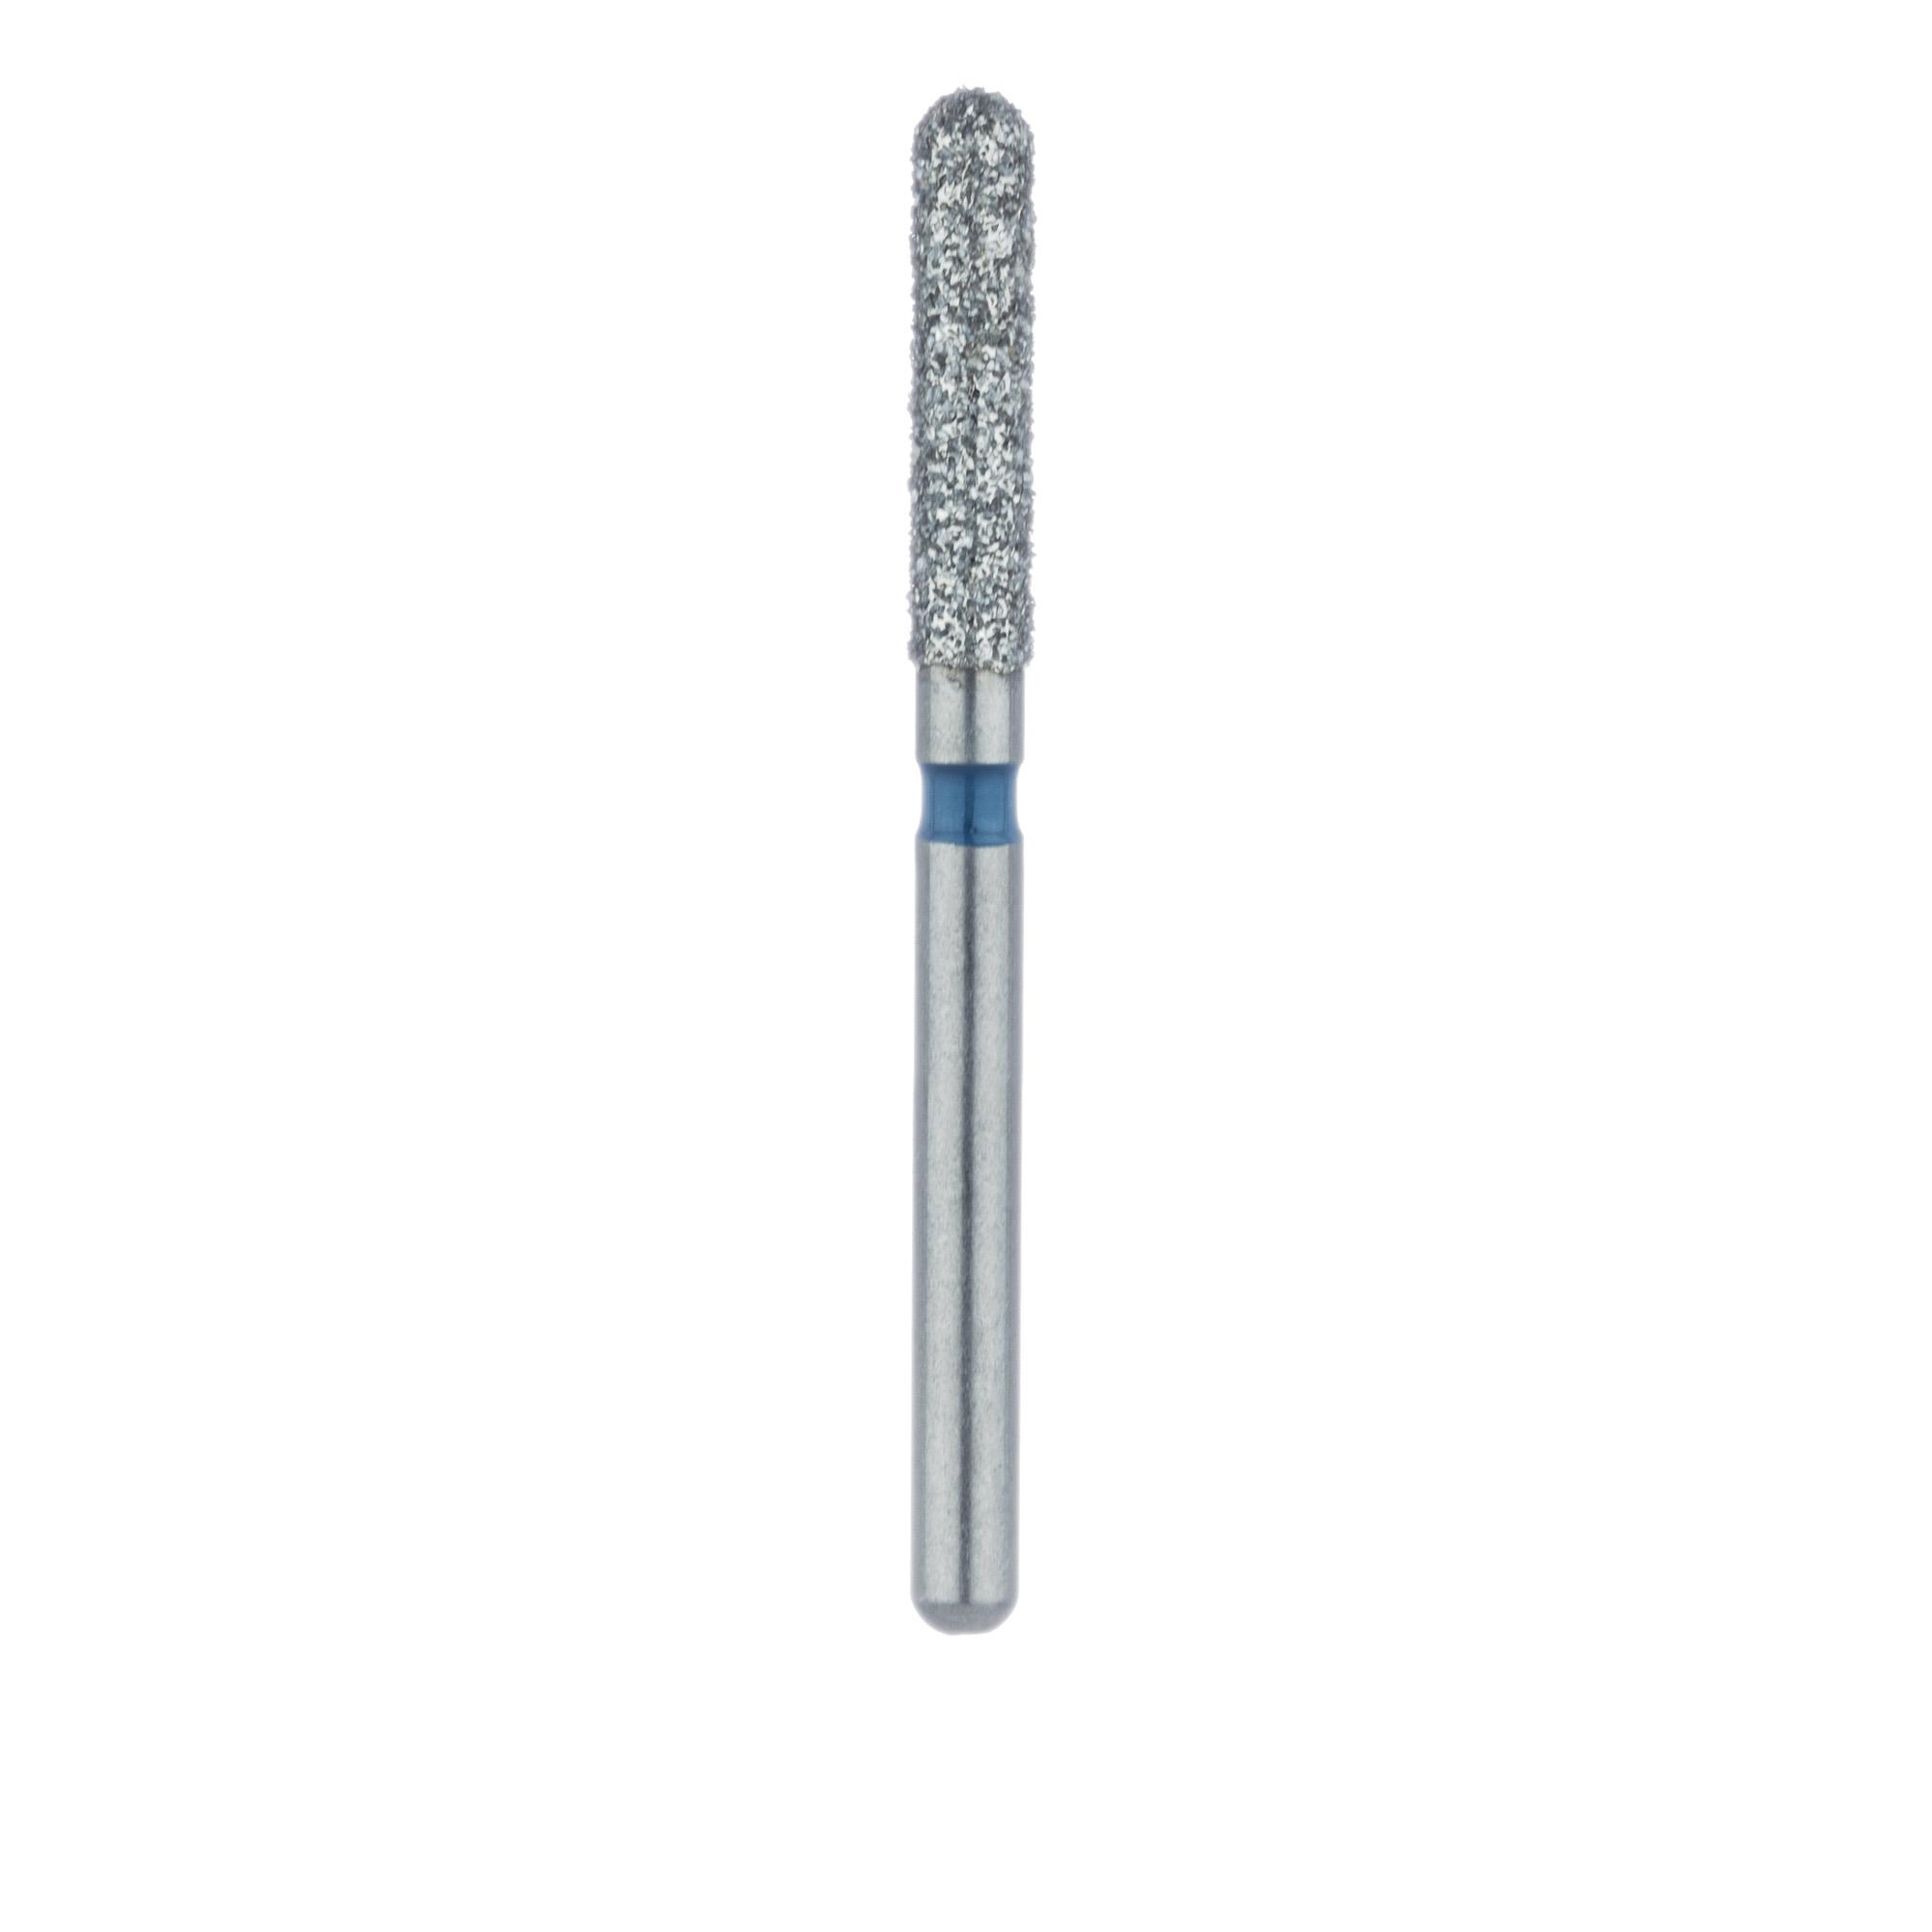 881-018-FG Round End Cylinder Diamond Bur, 1.8mm Ø, Medium, FG